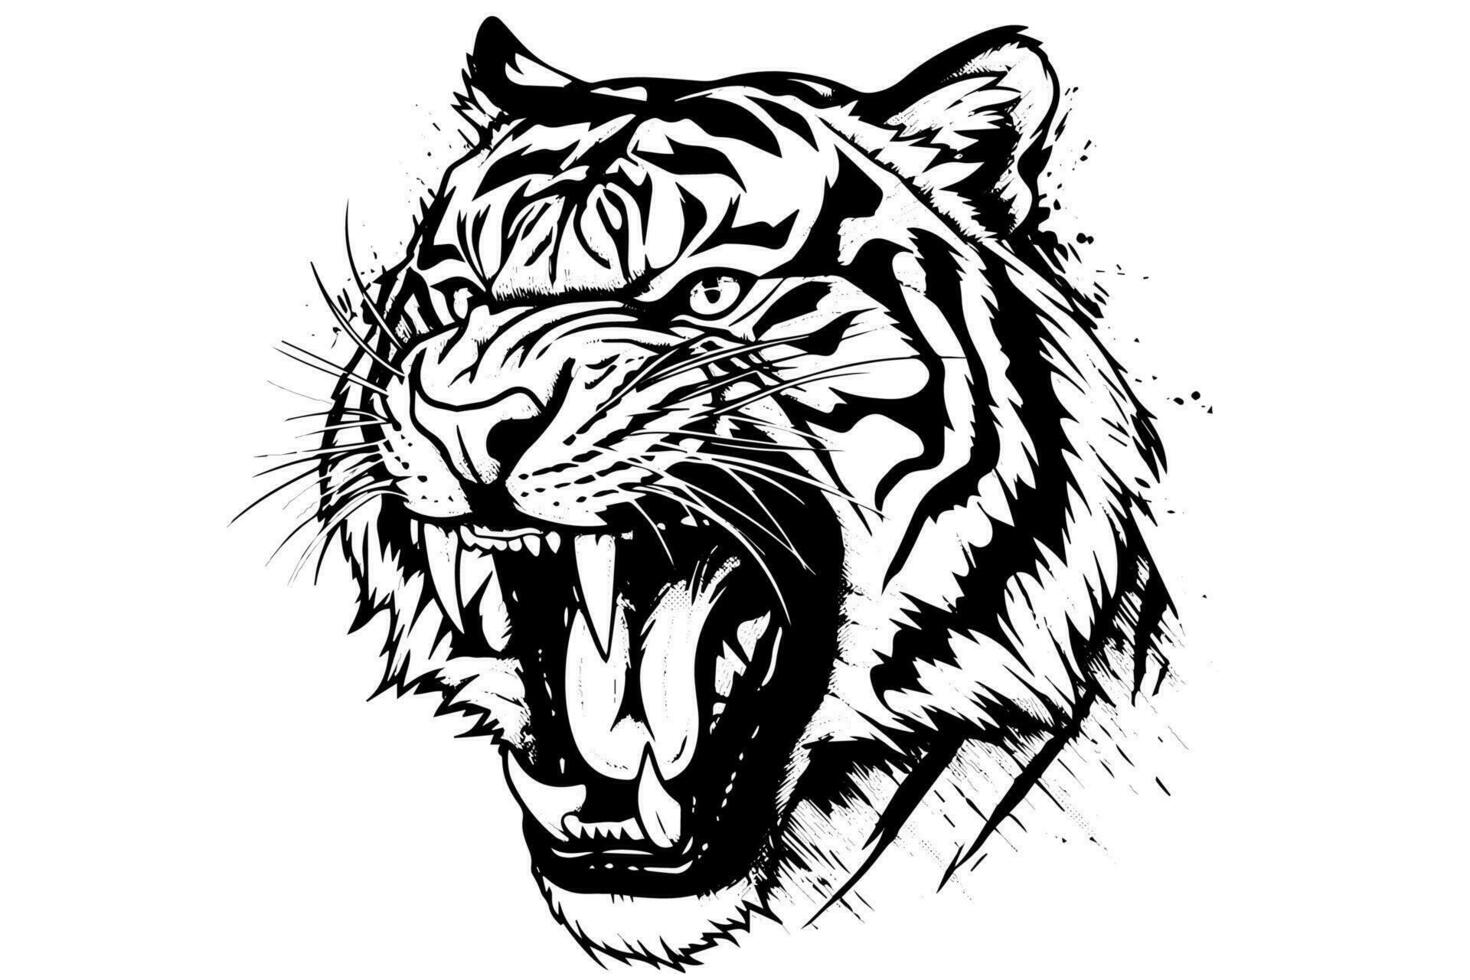 tijger hoofd hand- getrokken gravure stijl vector illustratie.